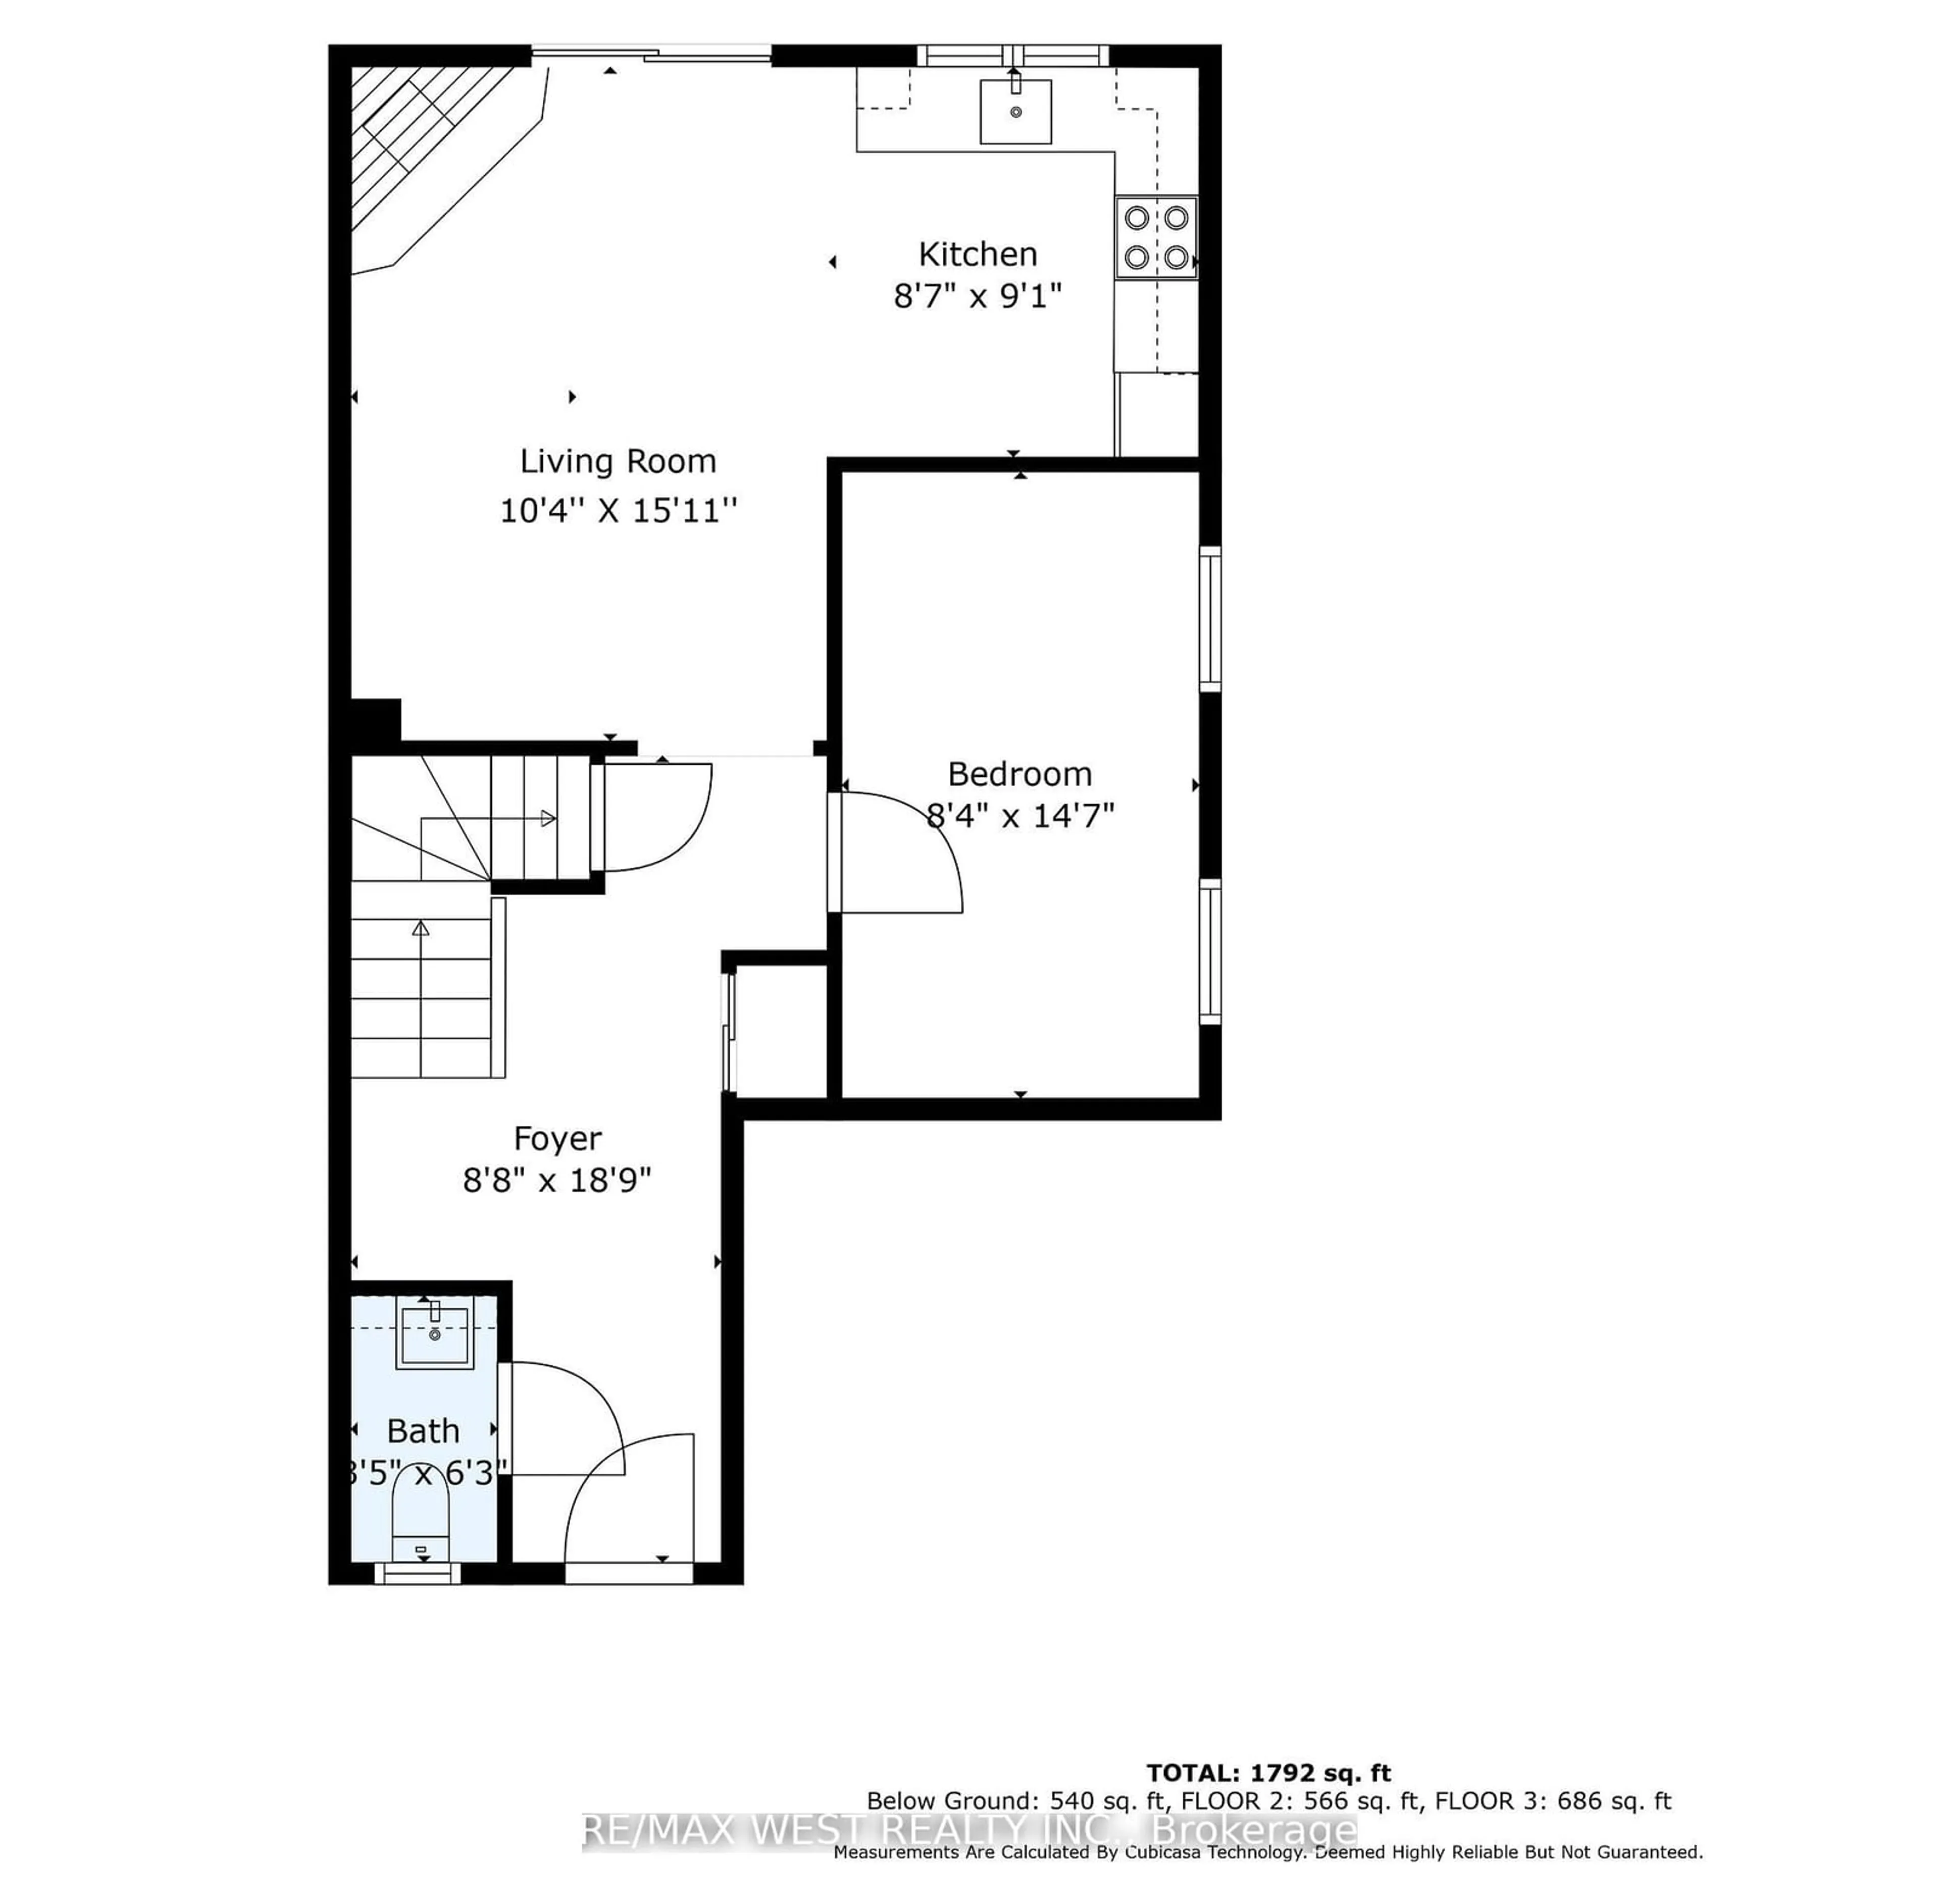 Floor plan for 91 Autumn Glen Circ, Toronto Ontario M9W 6B3